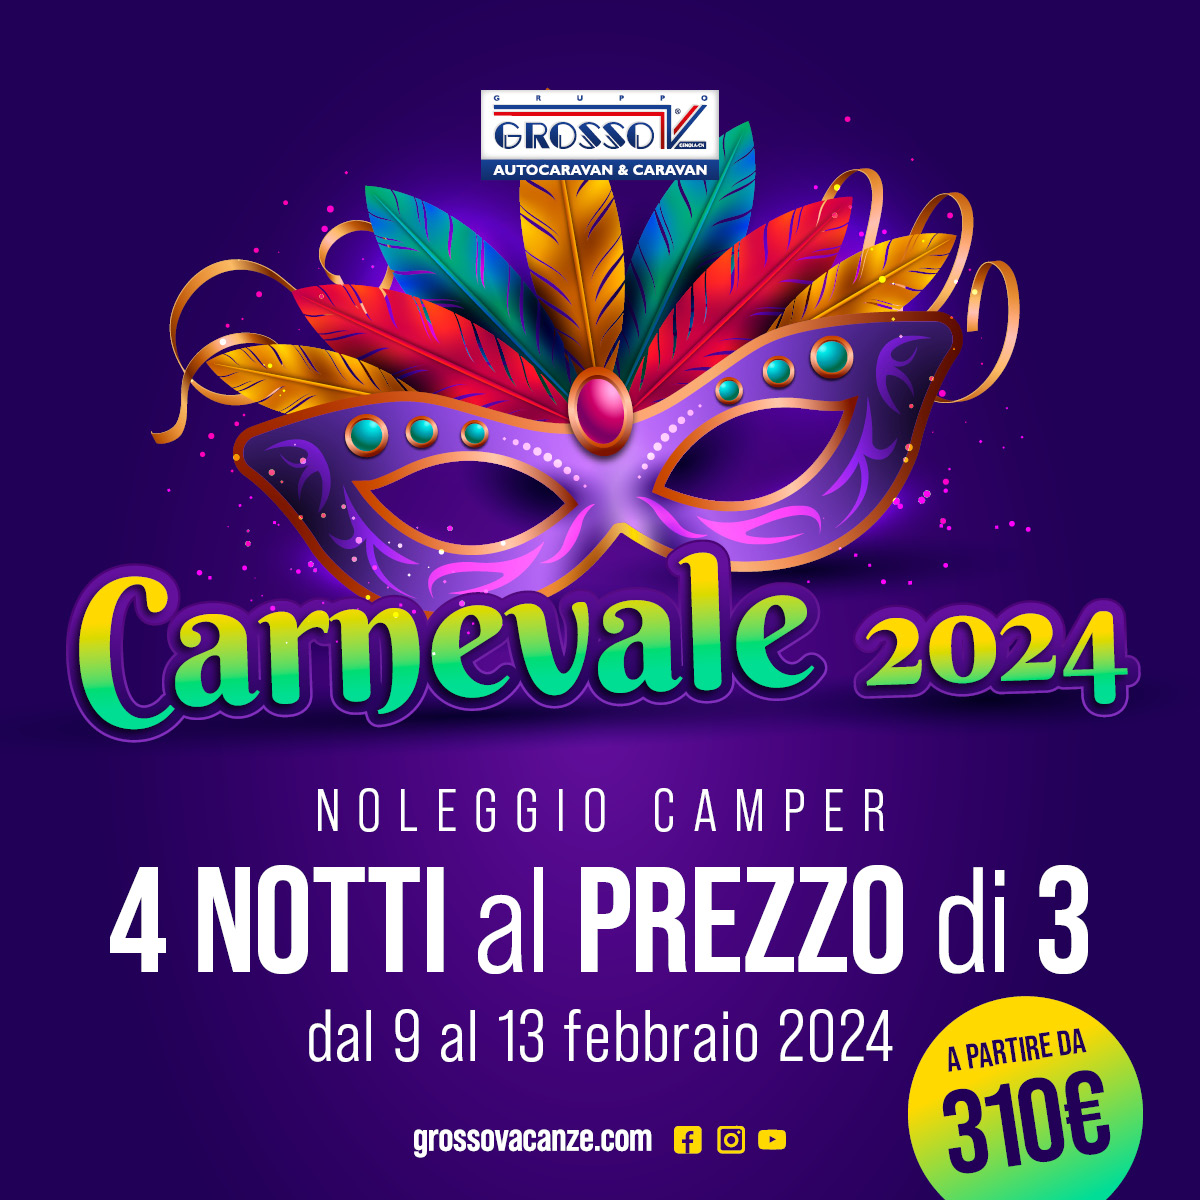 Noleggio camper - Carnevale 2024